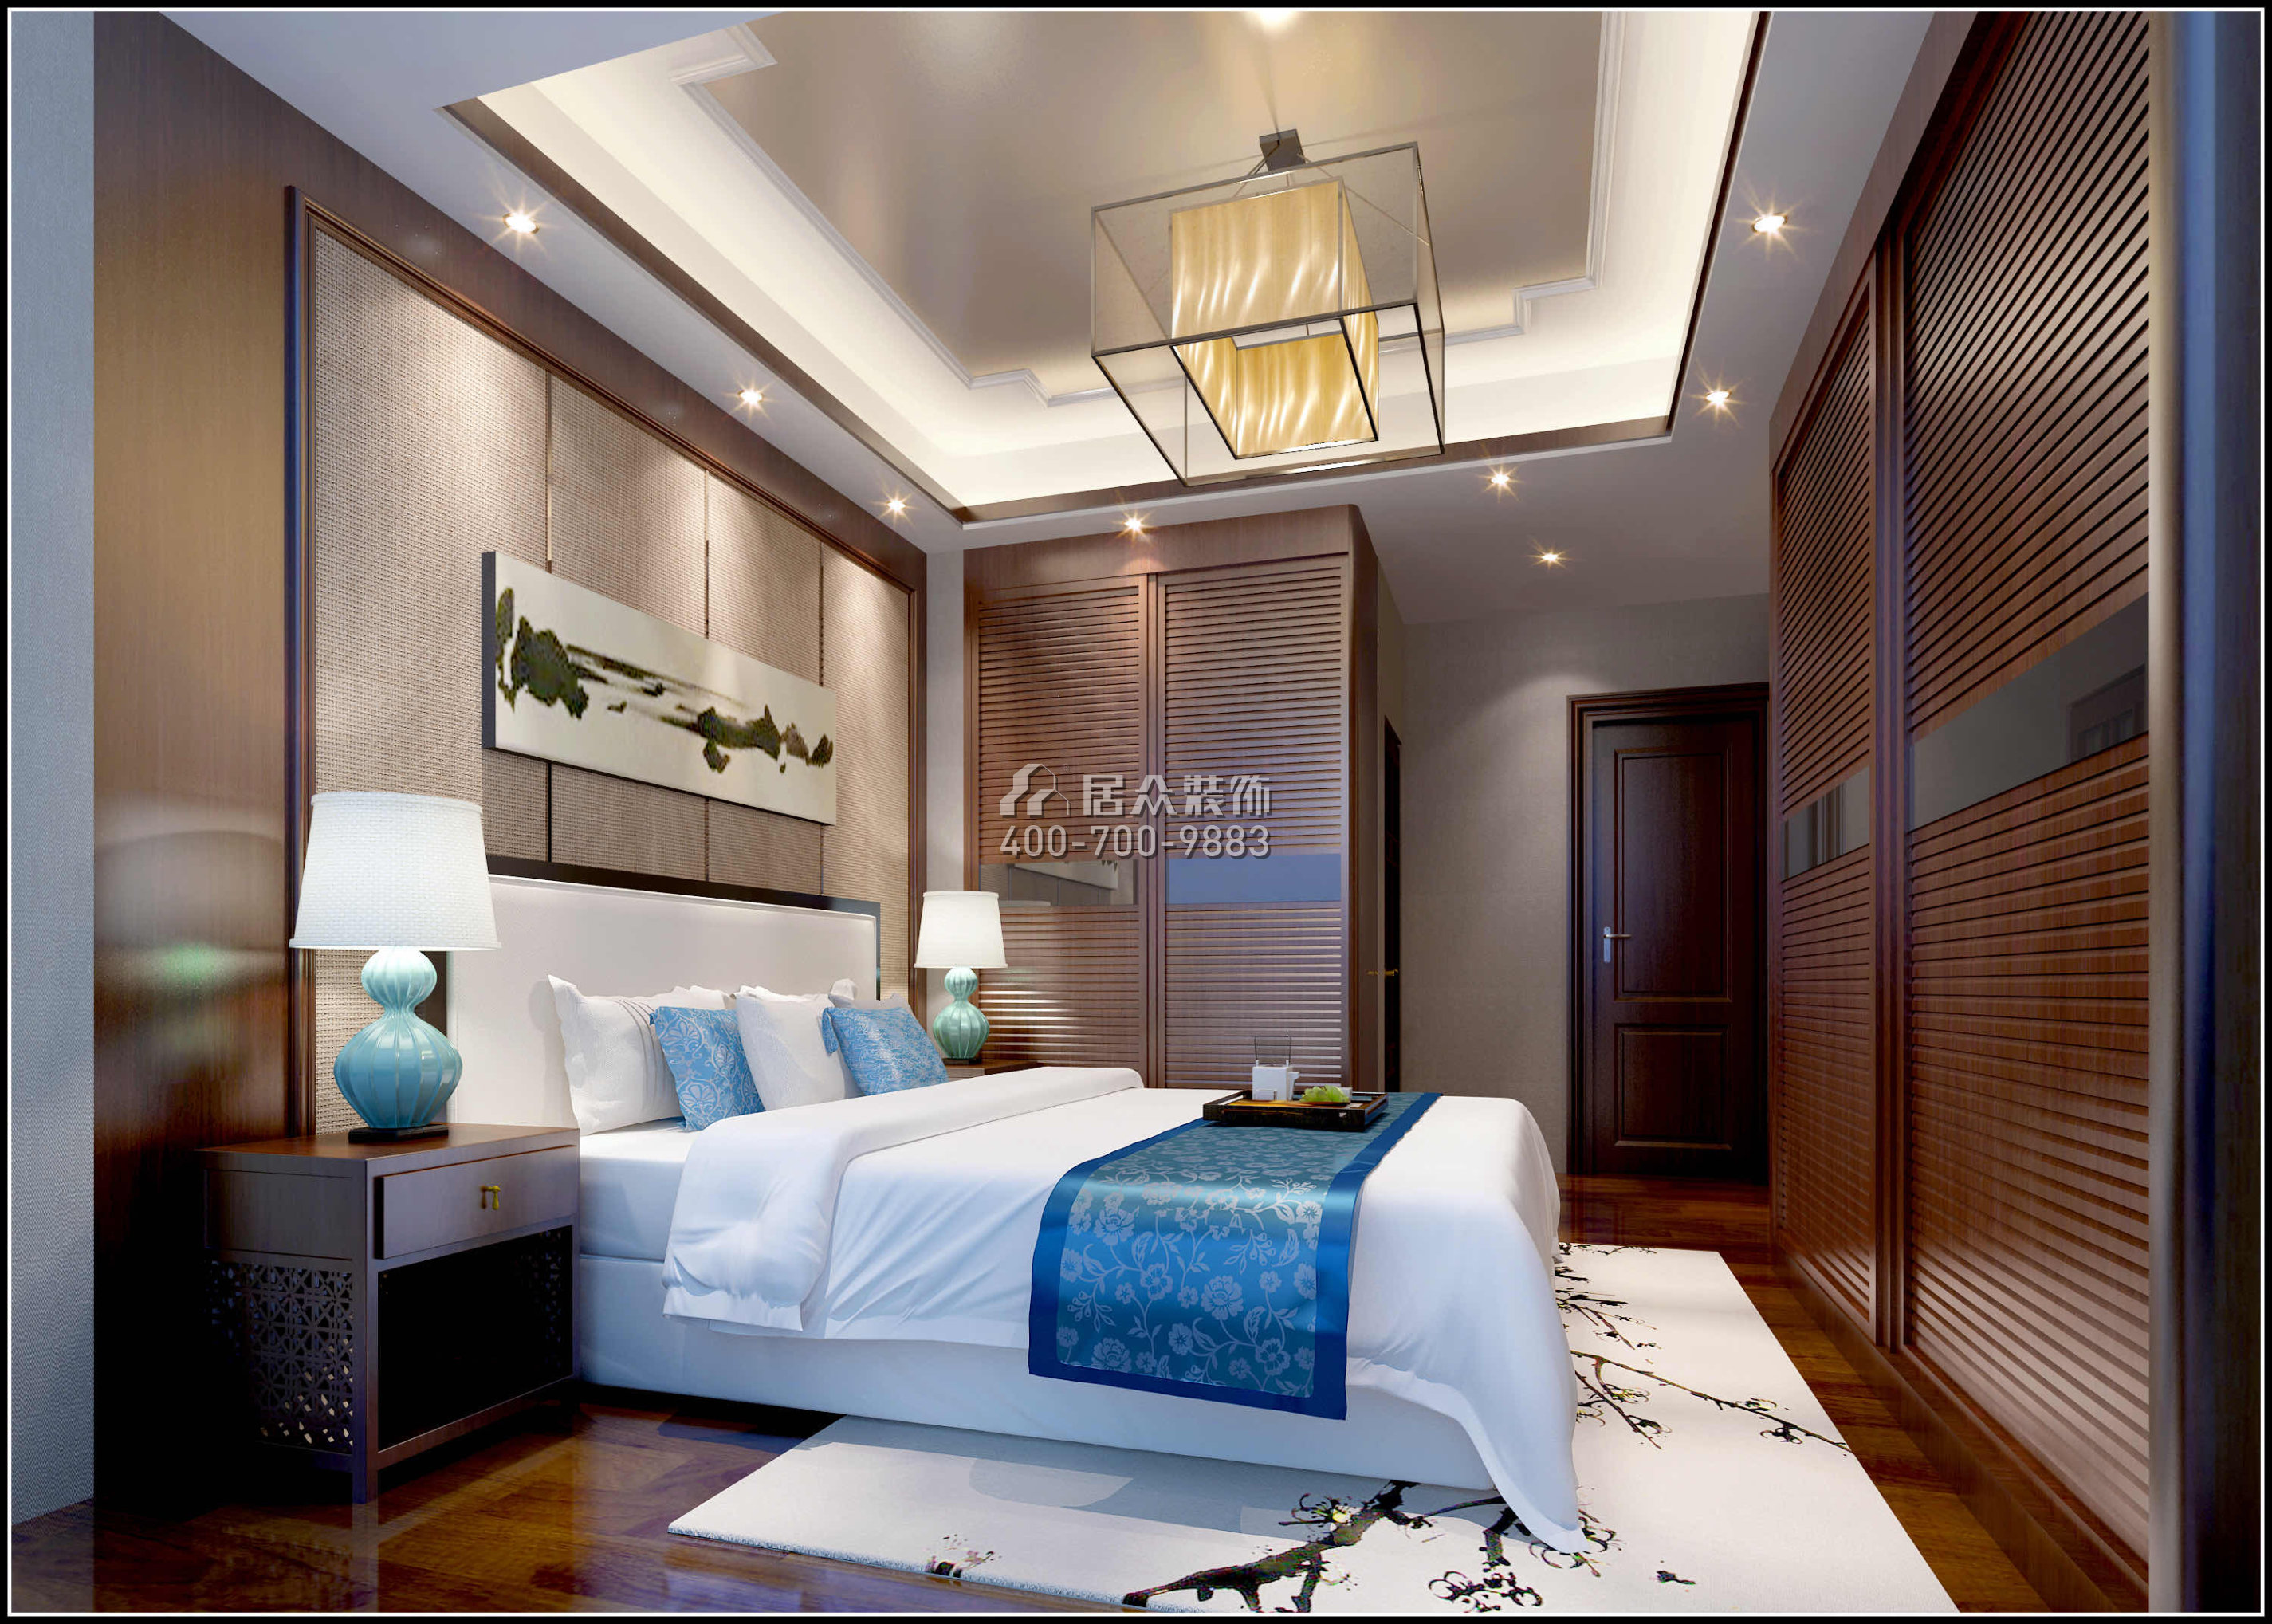 君悅龍庭205平方米中式風格平層戶型臥室裝修效果圖